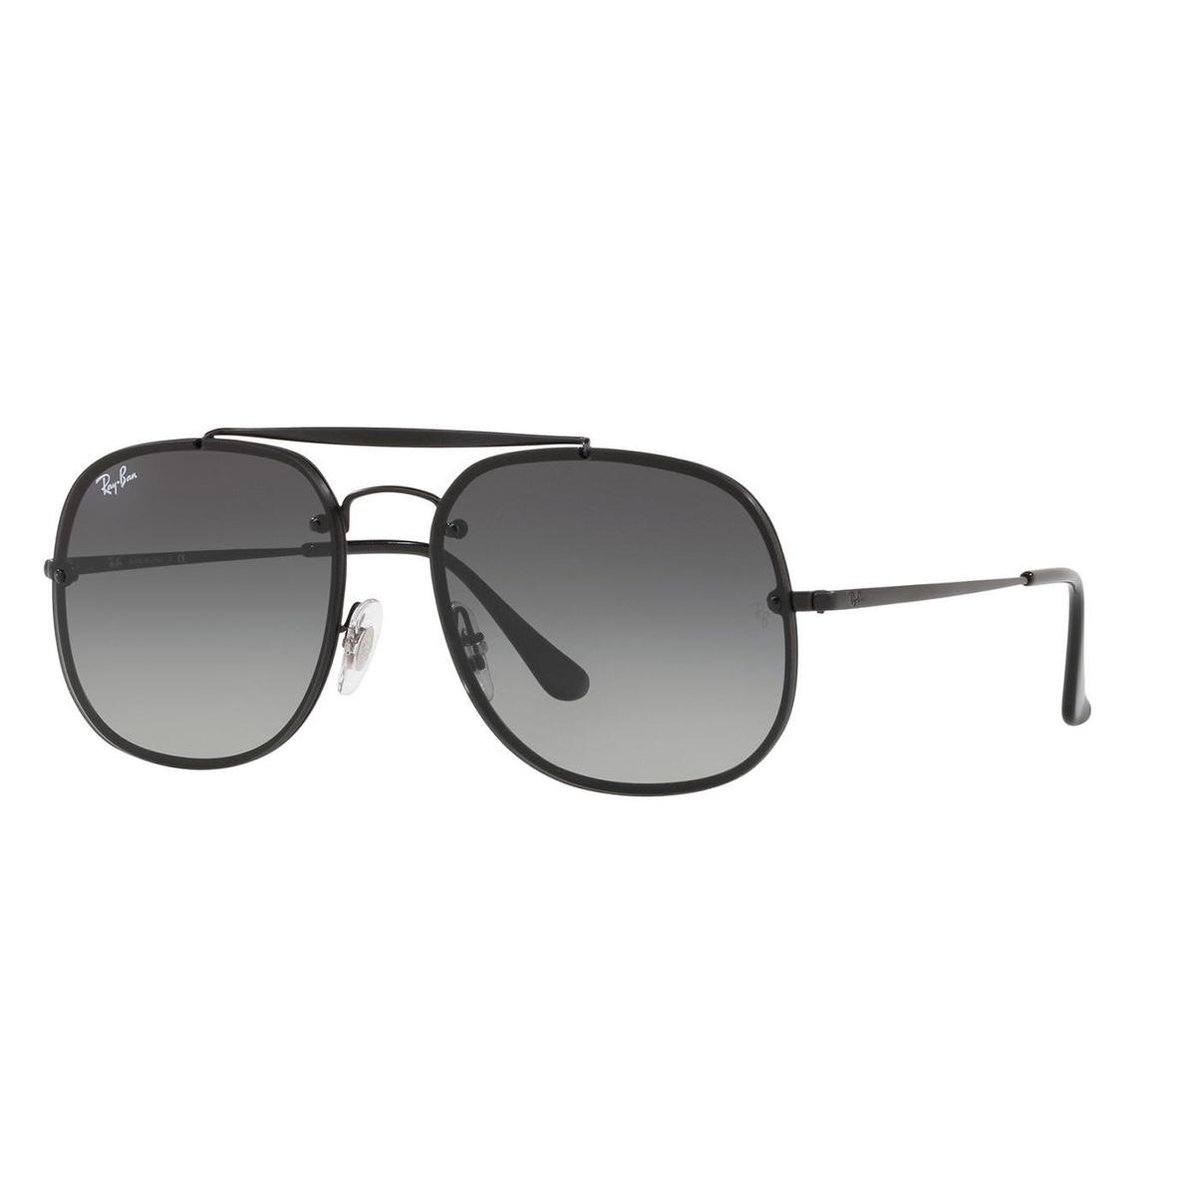 Ray-Ban RayBan Blaze General zonnebril - zwart montuur met grijze gradiënt lenzen - 58 mm - RB3583 153/11 58-16